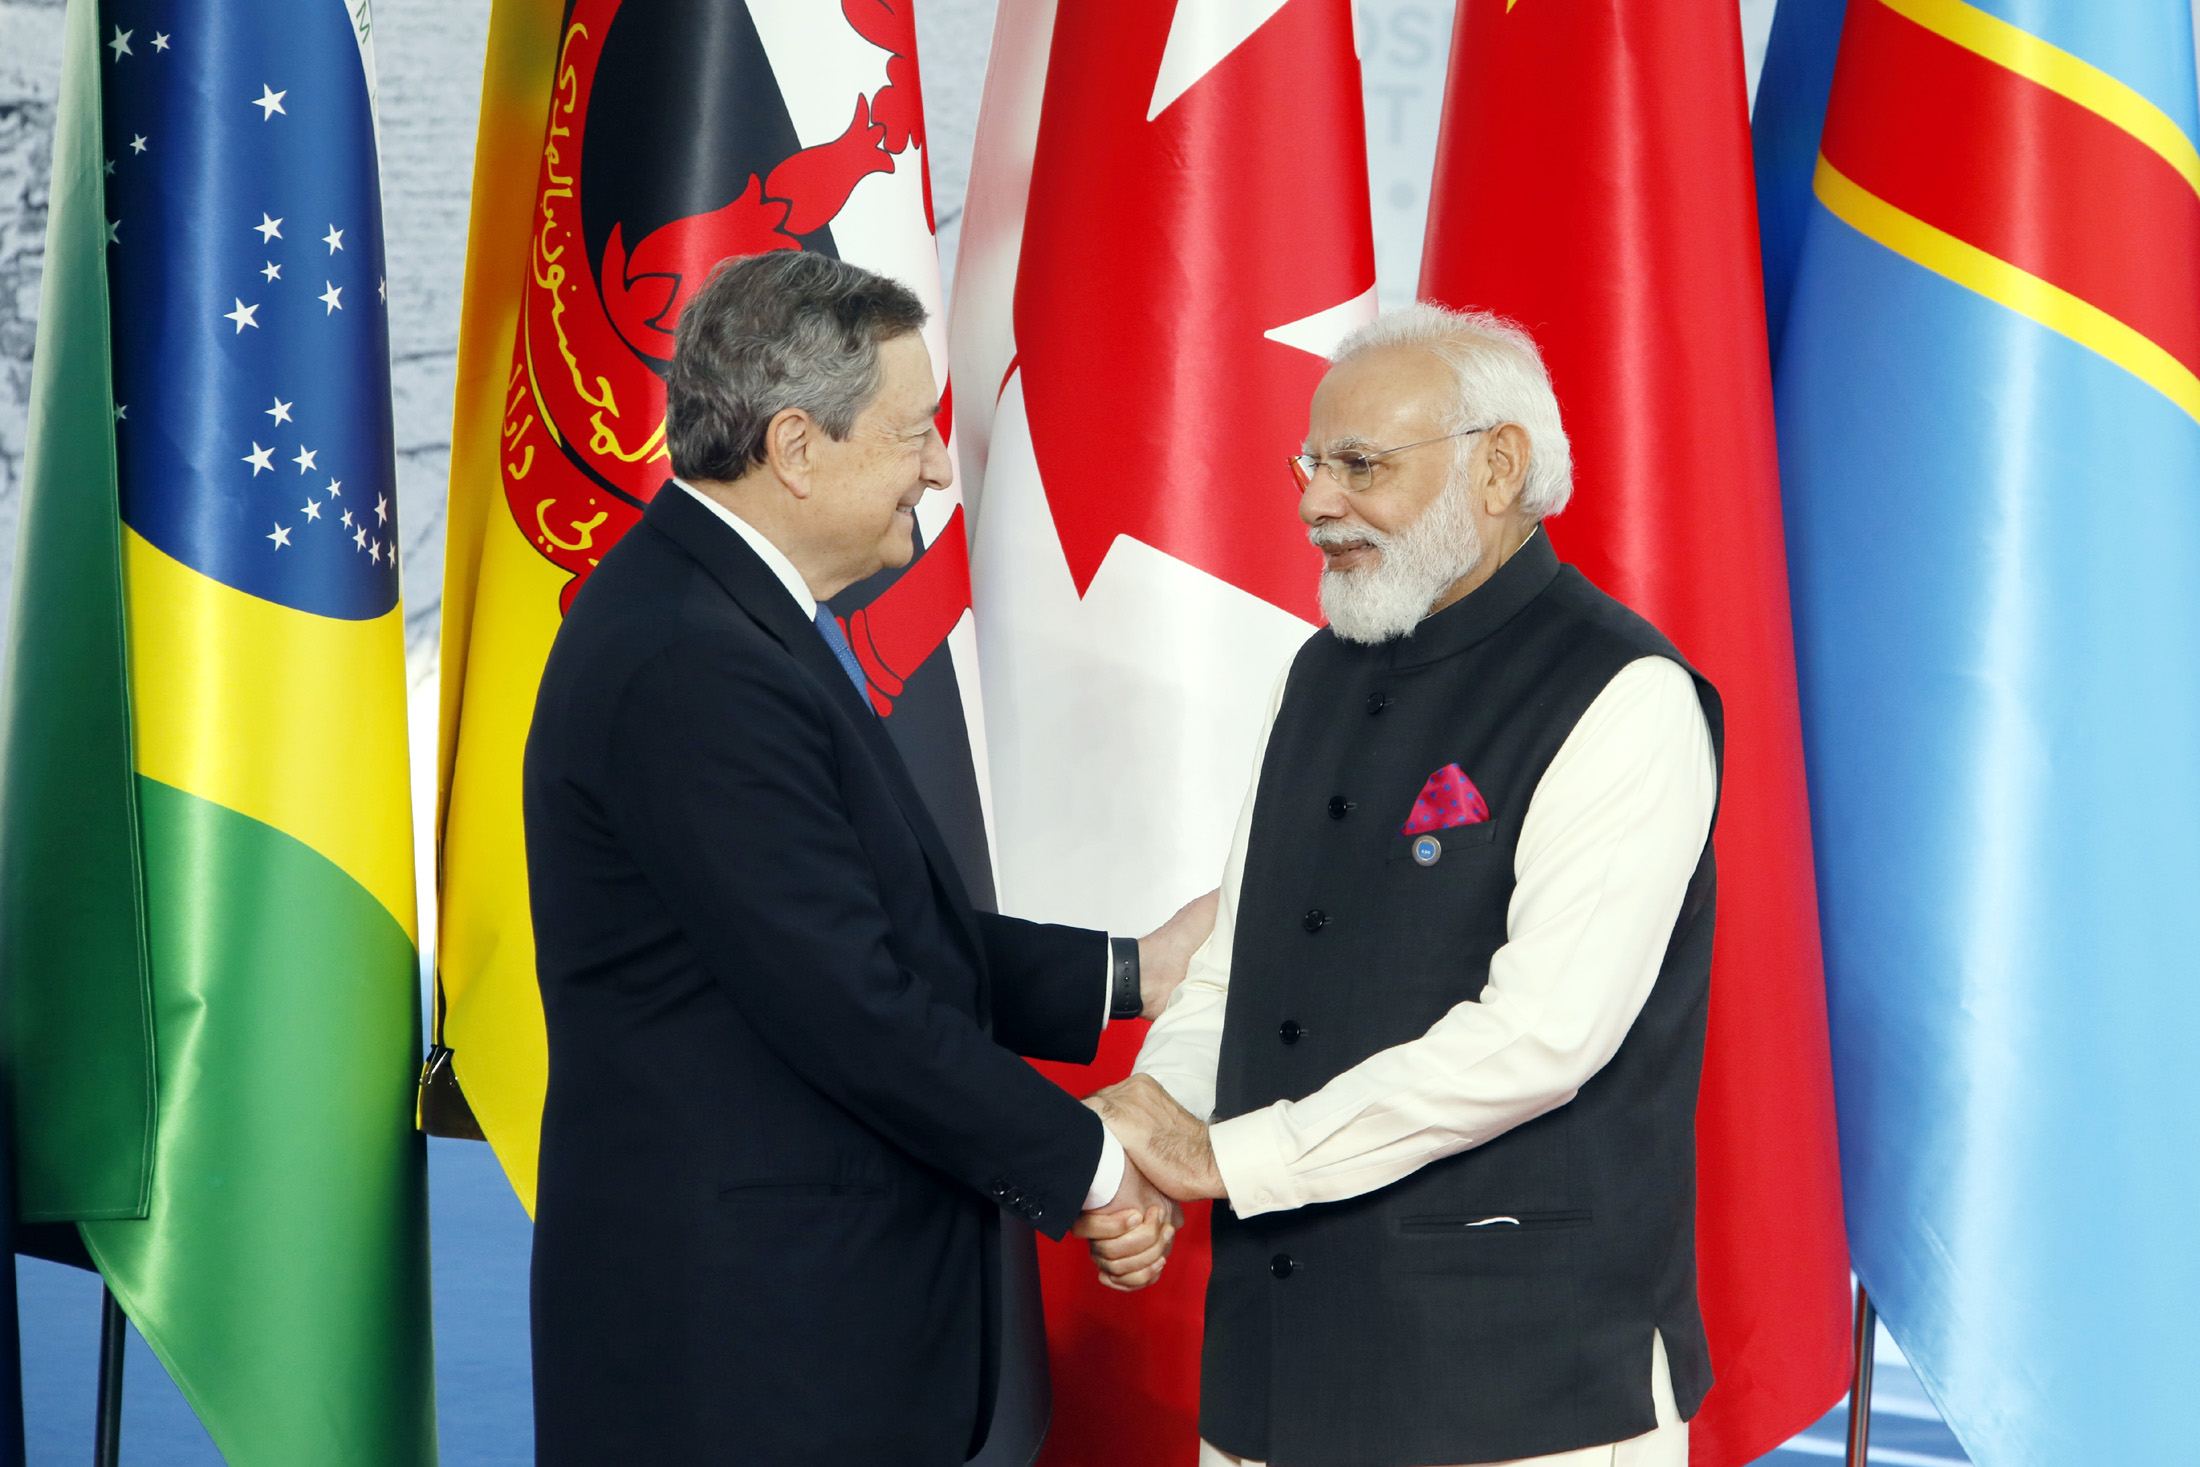 प्रधानमंत्री मोदी ने इटली के अपने समकक्ष मारियो ड्रैगी से मुलाकात की